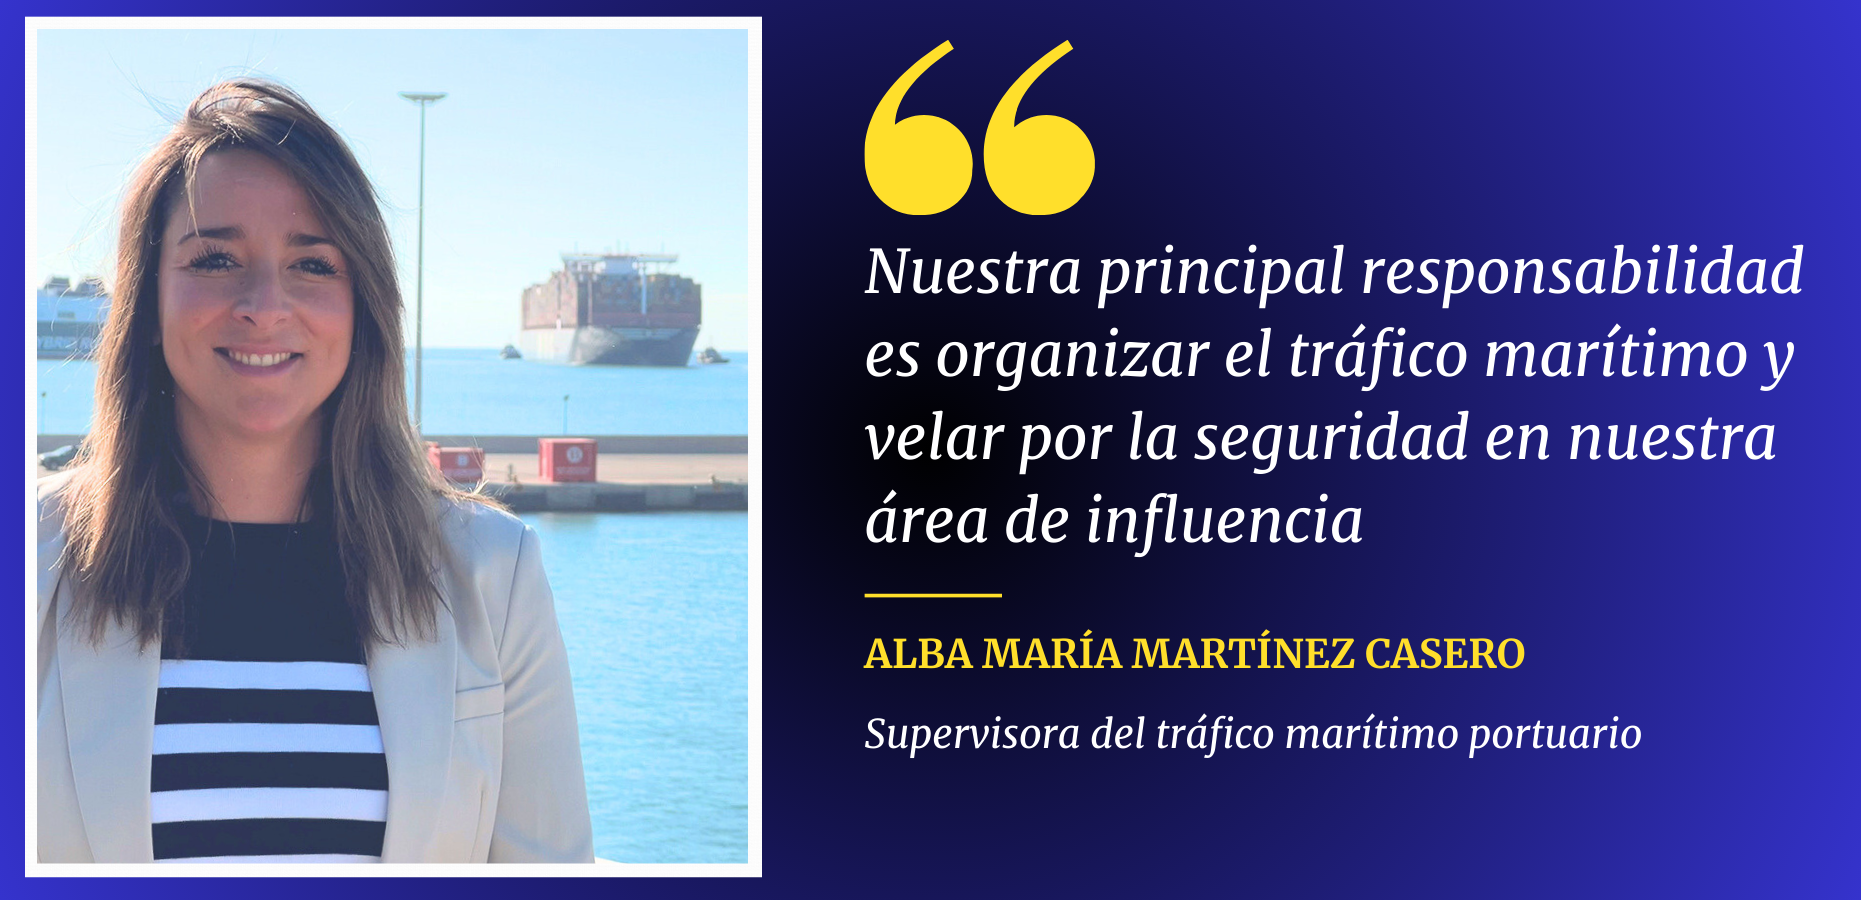 Alba María Martínez Casero Supervisora del tráfico marítimo portuario